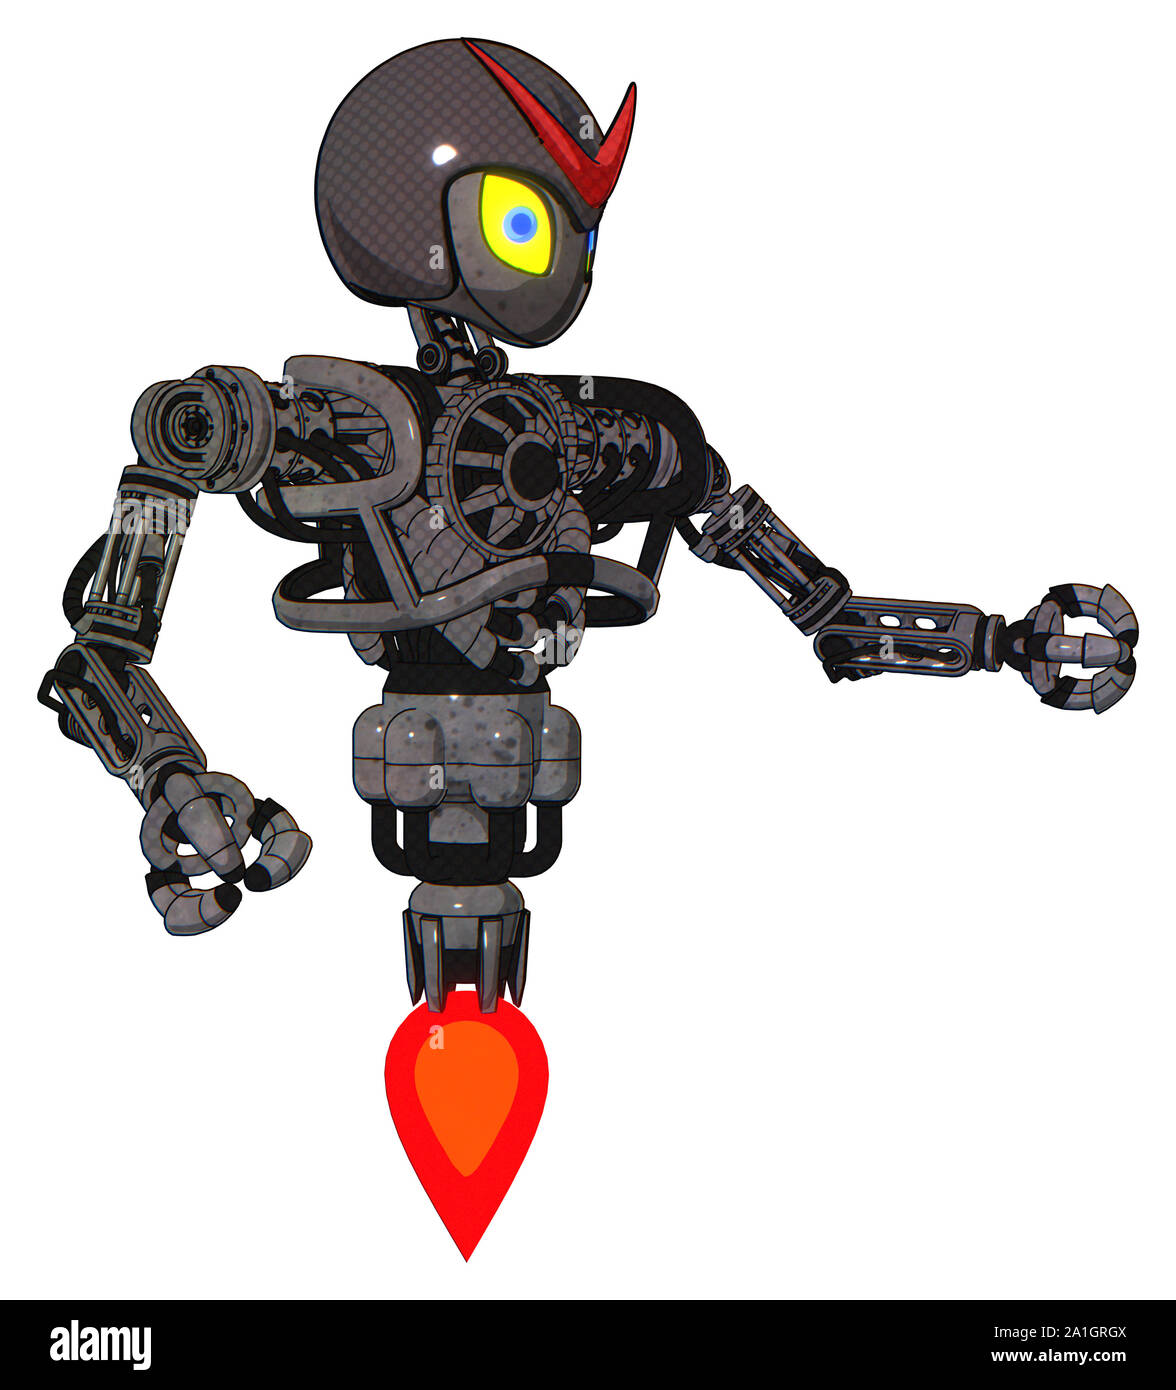 Roboter, die Elemente enthalten: grau Alien style Kopf, gelbe Augen mit blauen Schüler, Rot v, grau Helm, schwere obere Brust, keine Brust plating, Jet propulsio Stockfoto